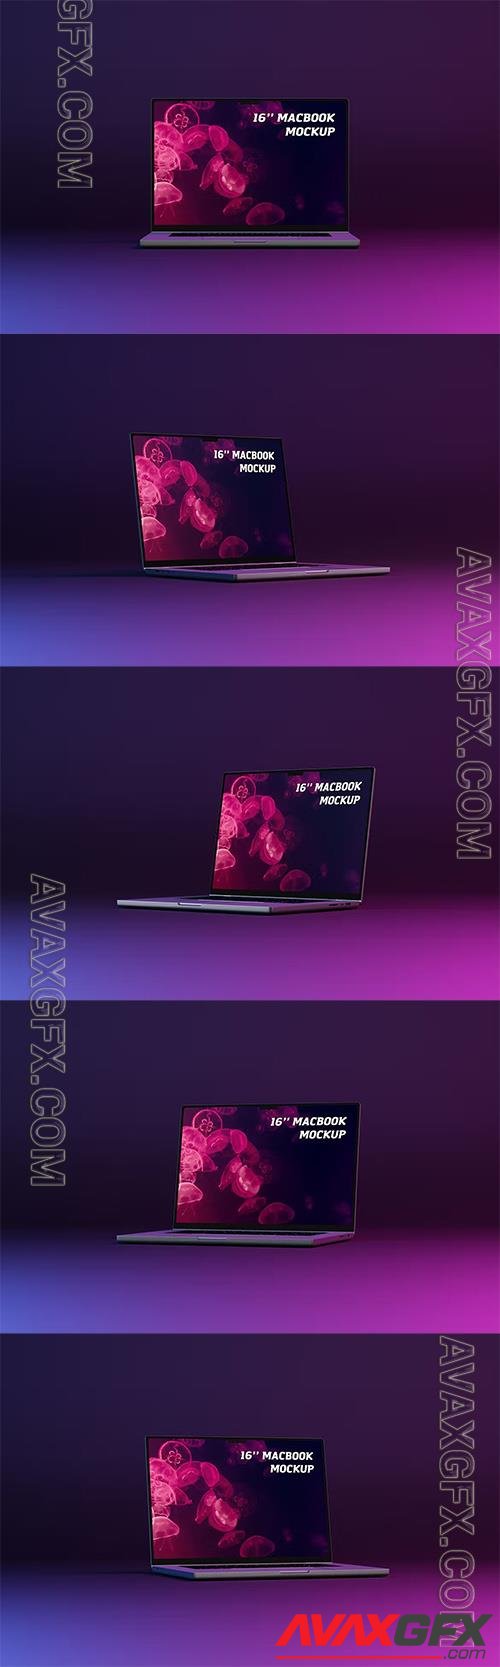 Neon 16'' MacBook Screen Mockup JQN9LEX